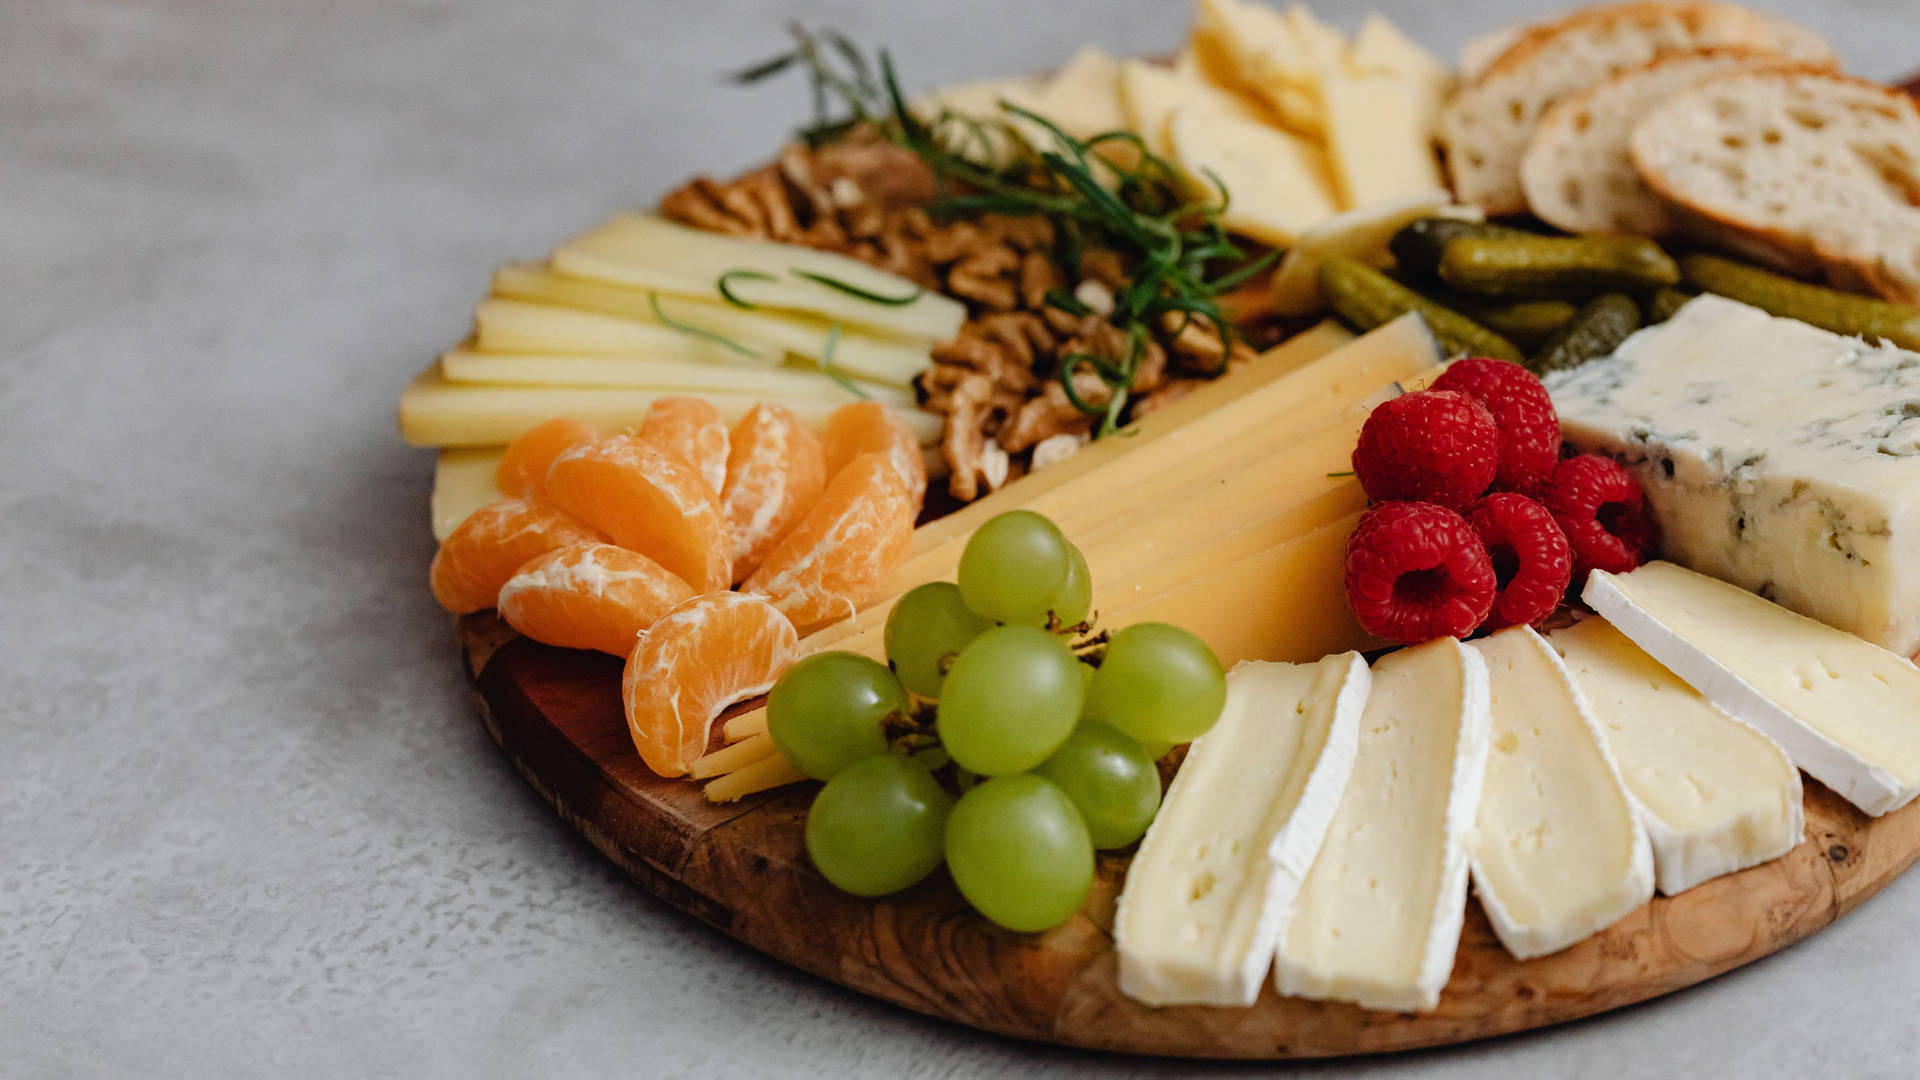 Eineplatte Mit Käse, Obst Und Nüssen. Wallpaper